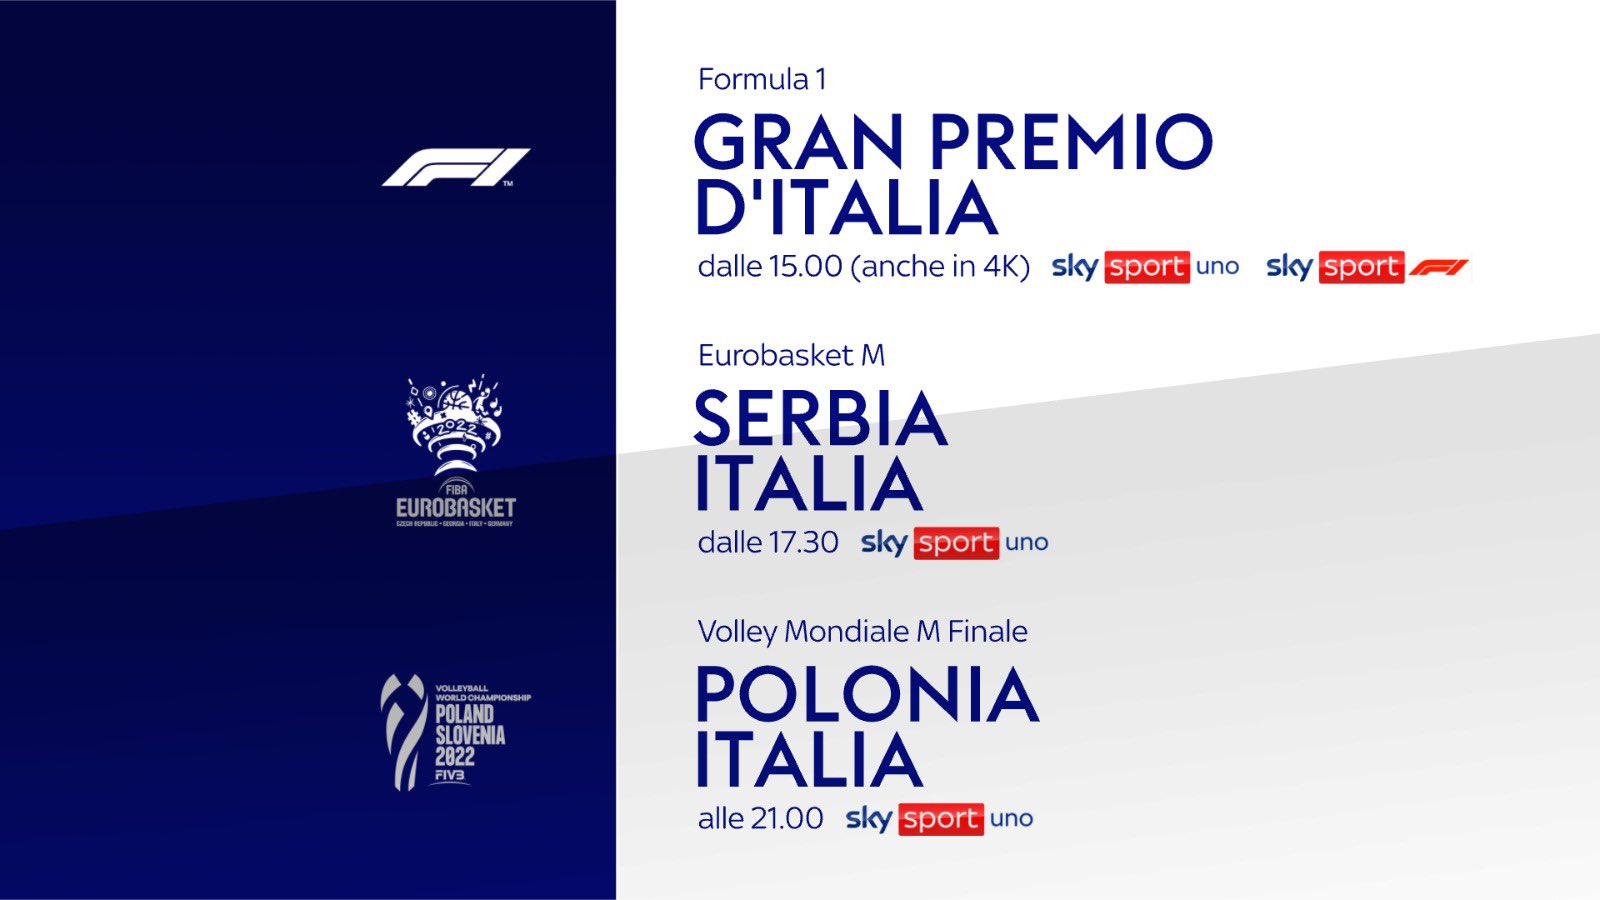 Sky Sport Sunday - Diretta F1 Monza, Eurobasket Italia-Serbia, Finale Mondiale Volley Italia-Polonia